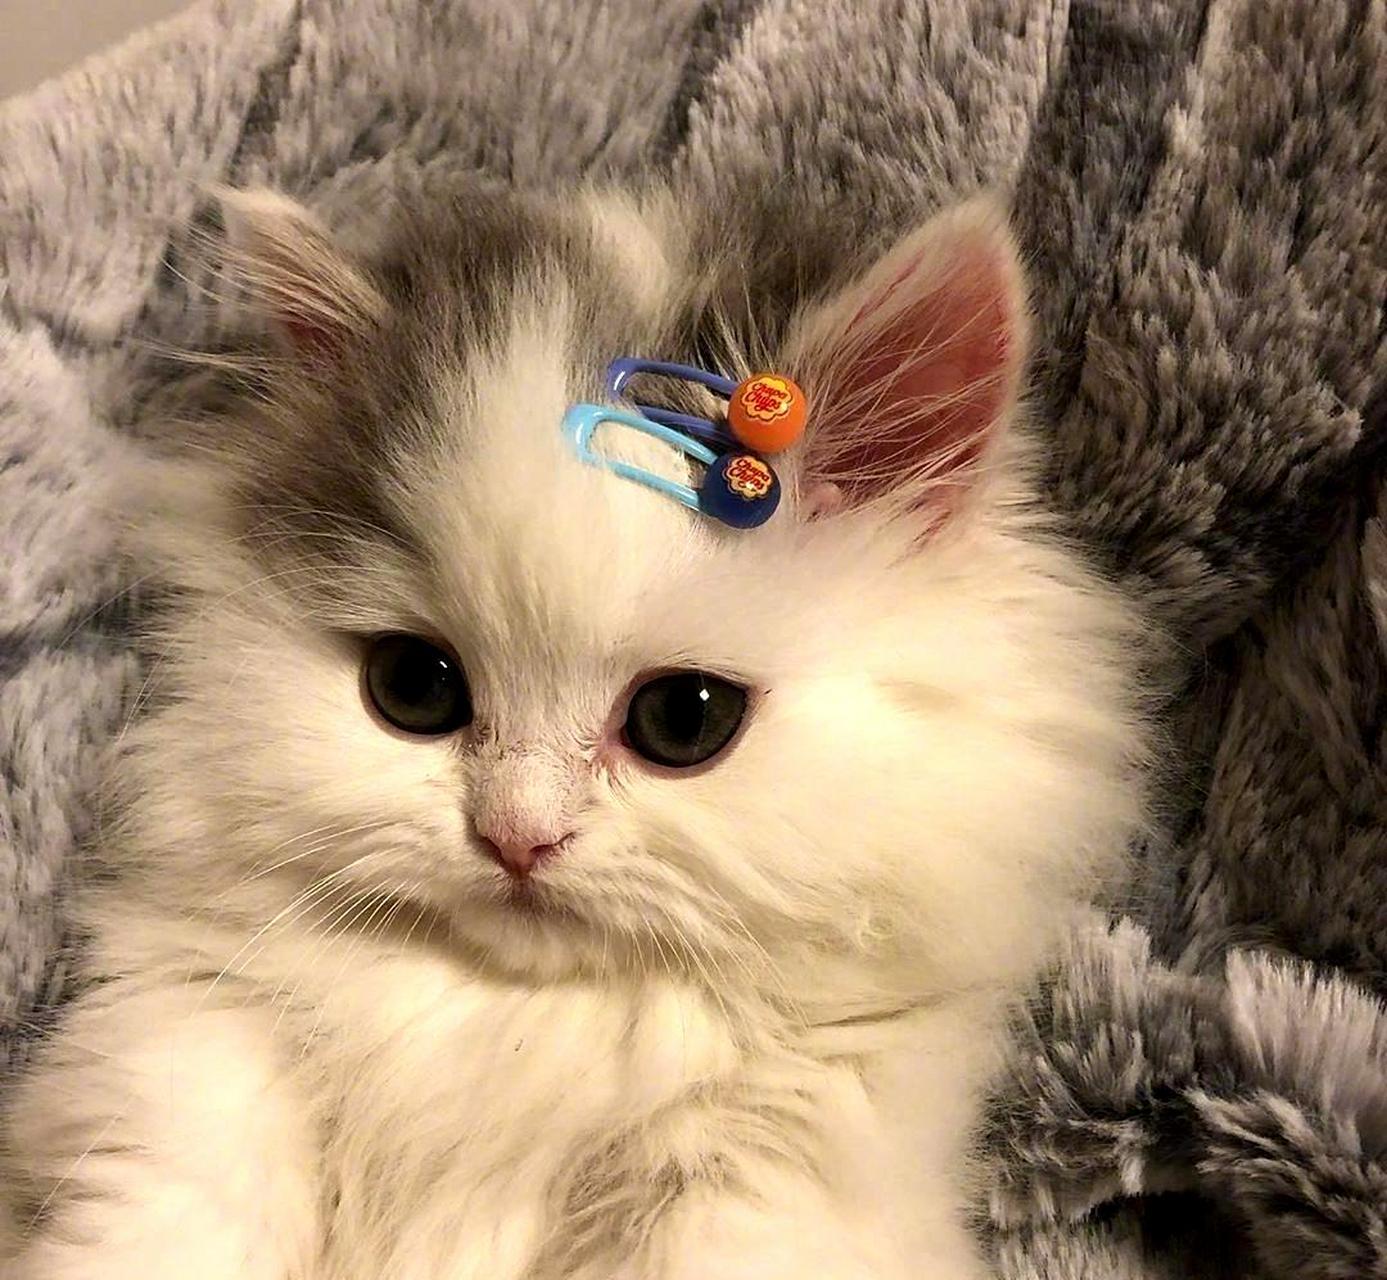 这只戴着发卡的小猫咪,实在是太可爱了!